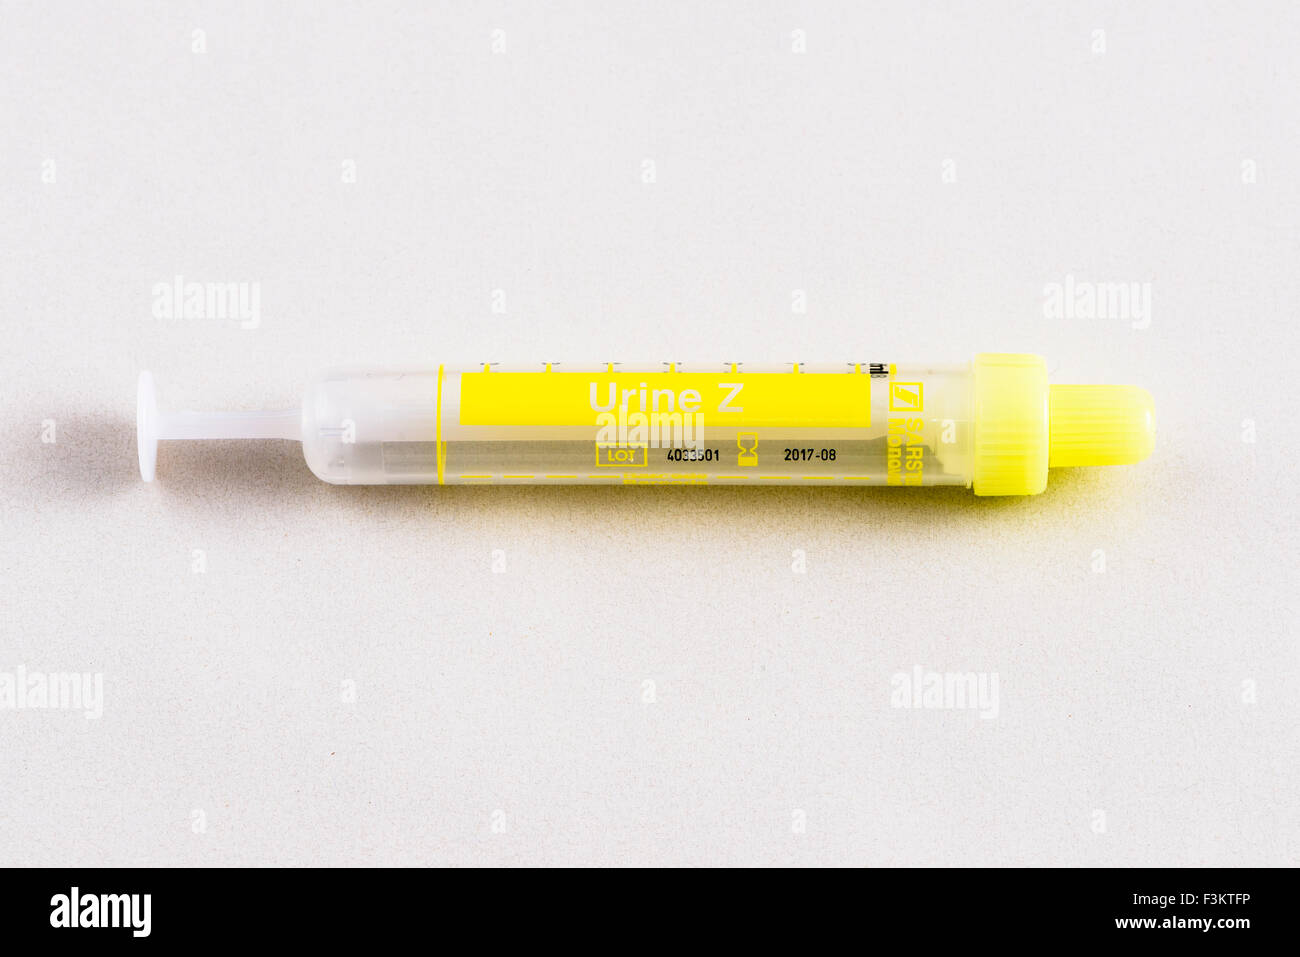 Un giallo fiala farmaceutica per uso medico, visualizzato su un tavolo bianco Foto Stock